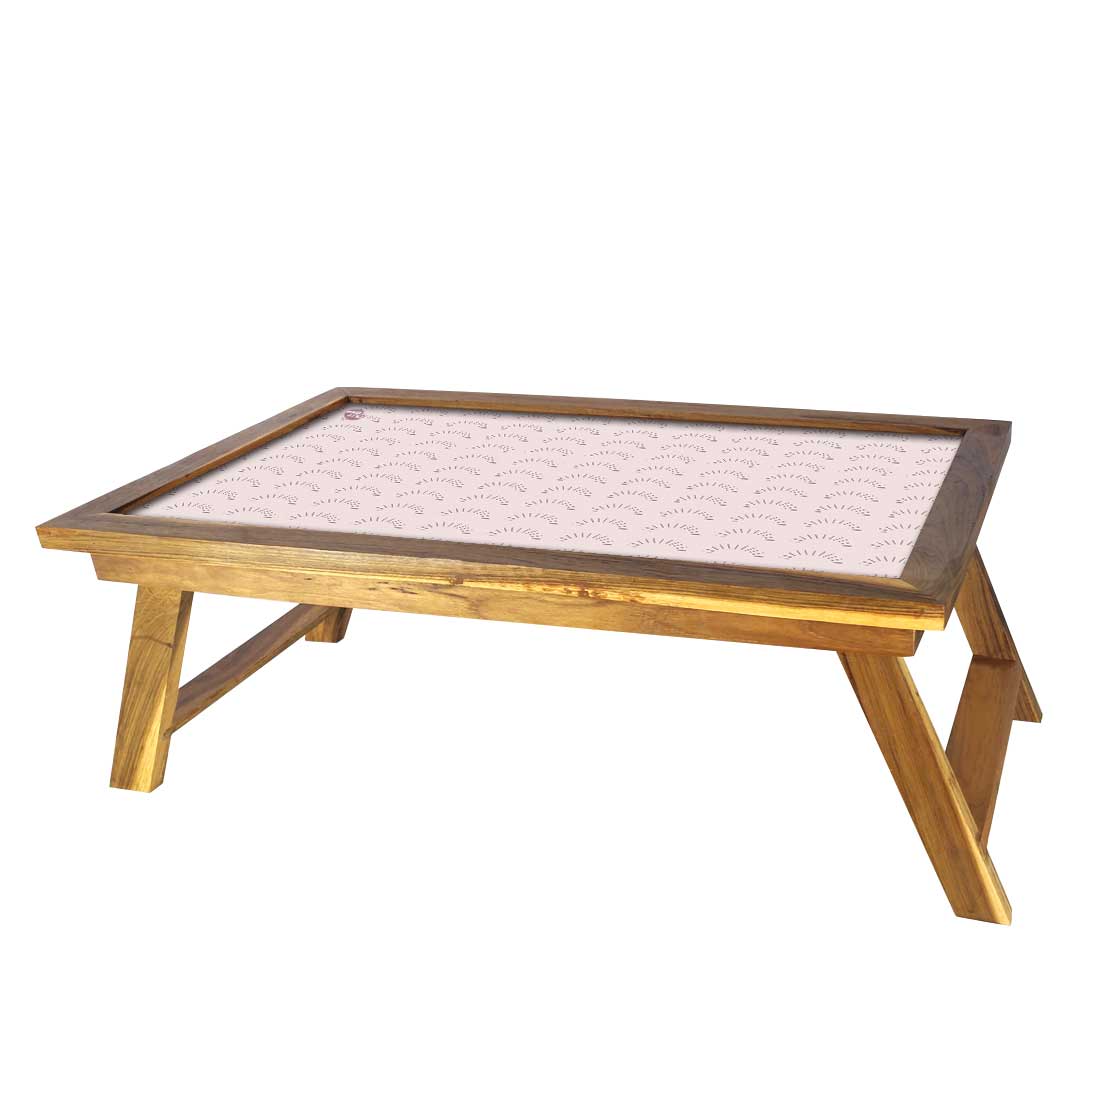 Designer Lapdesk Folding Wooden Bed Tray Study Desk - Pattern Designer Nutcase